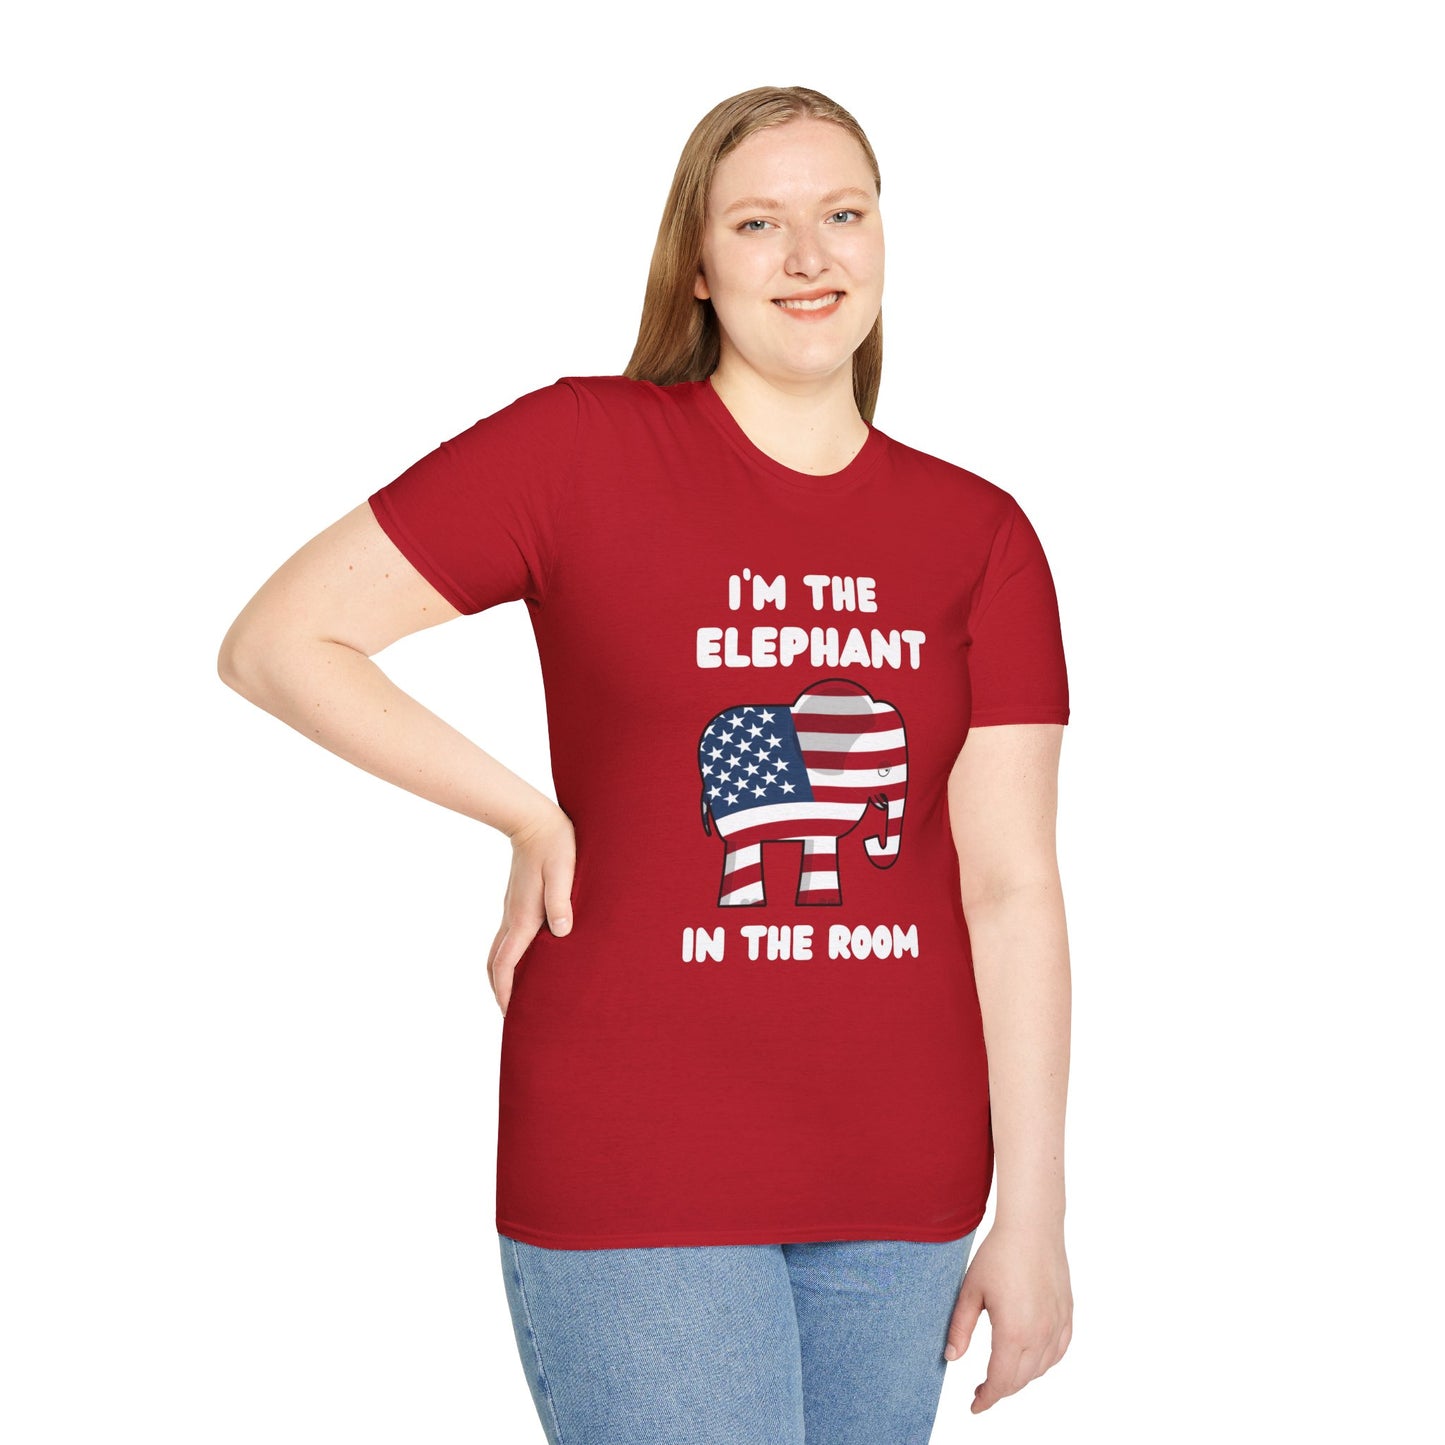 Elephant in Room Cartoon Women's Relaxed/Plus Tshirt (White Logo, Red & Gray Tshirts)